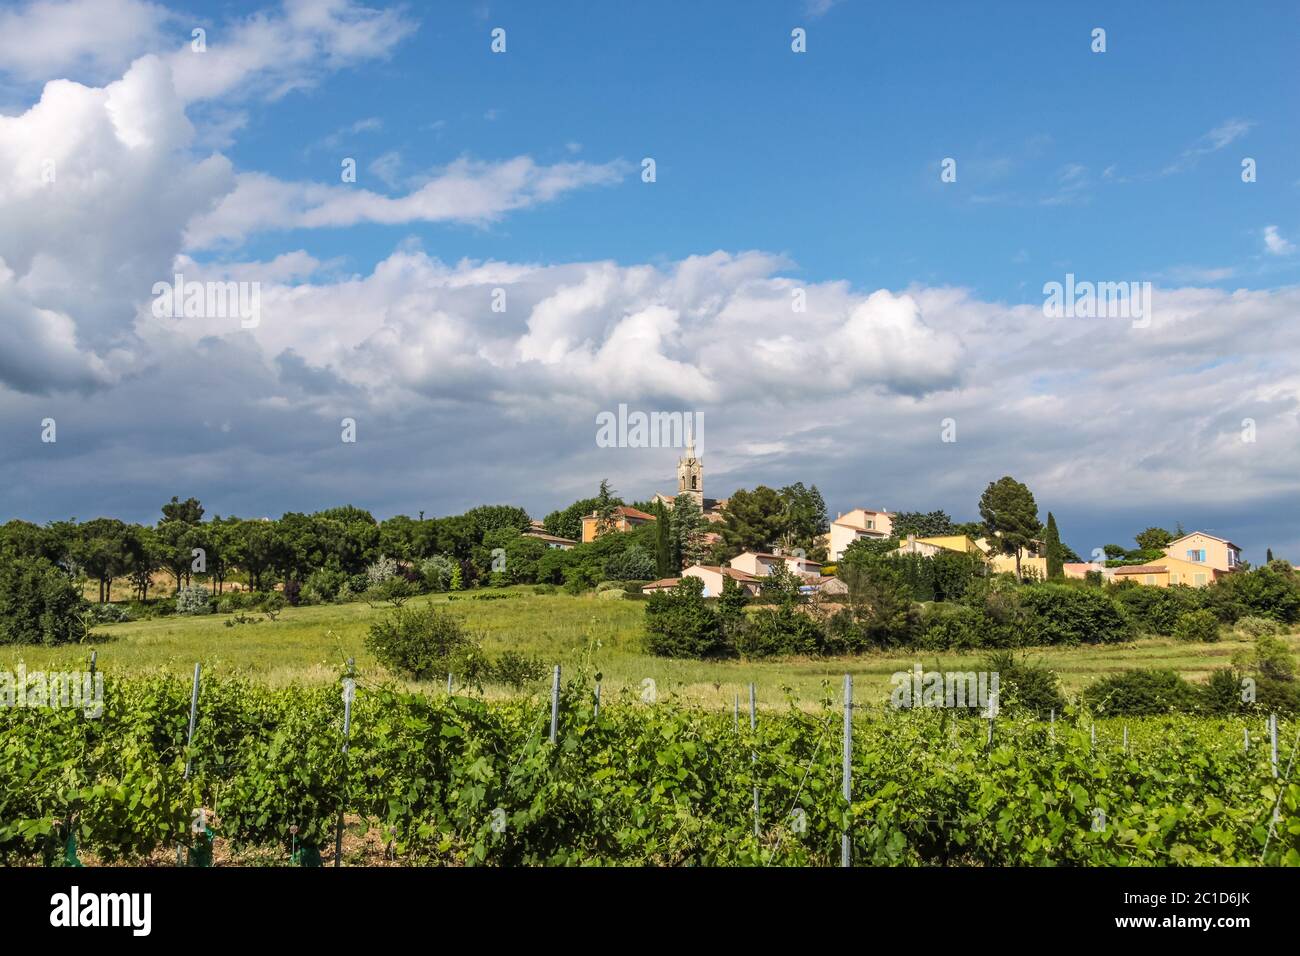 Le village de Villars dans la Provence dans le sud de la France Banque D'Images